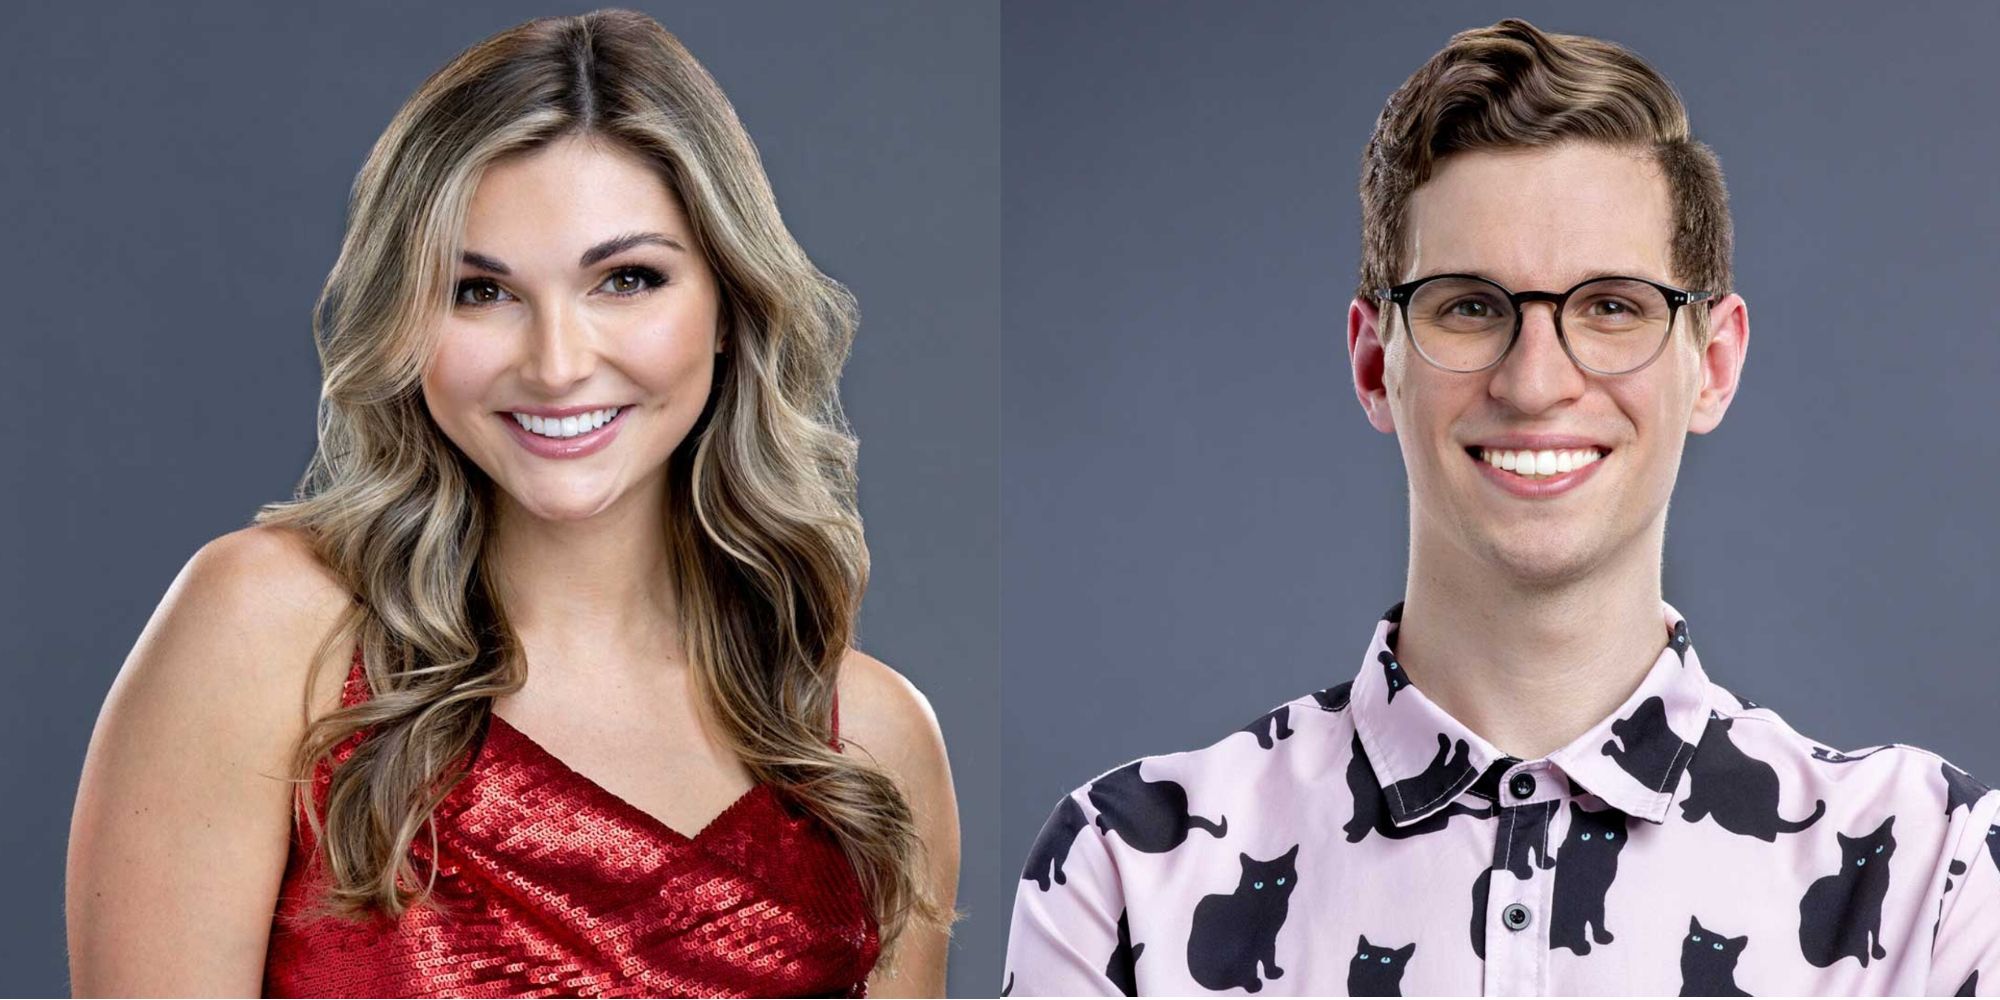 Miembros del elenco de Big Brother 24, clasificados de menor a mayor probabilidad de ganar